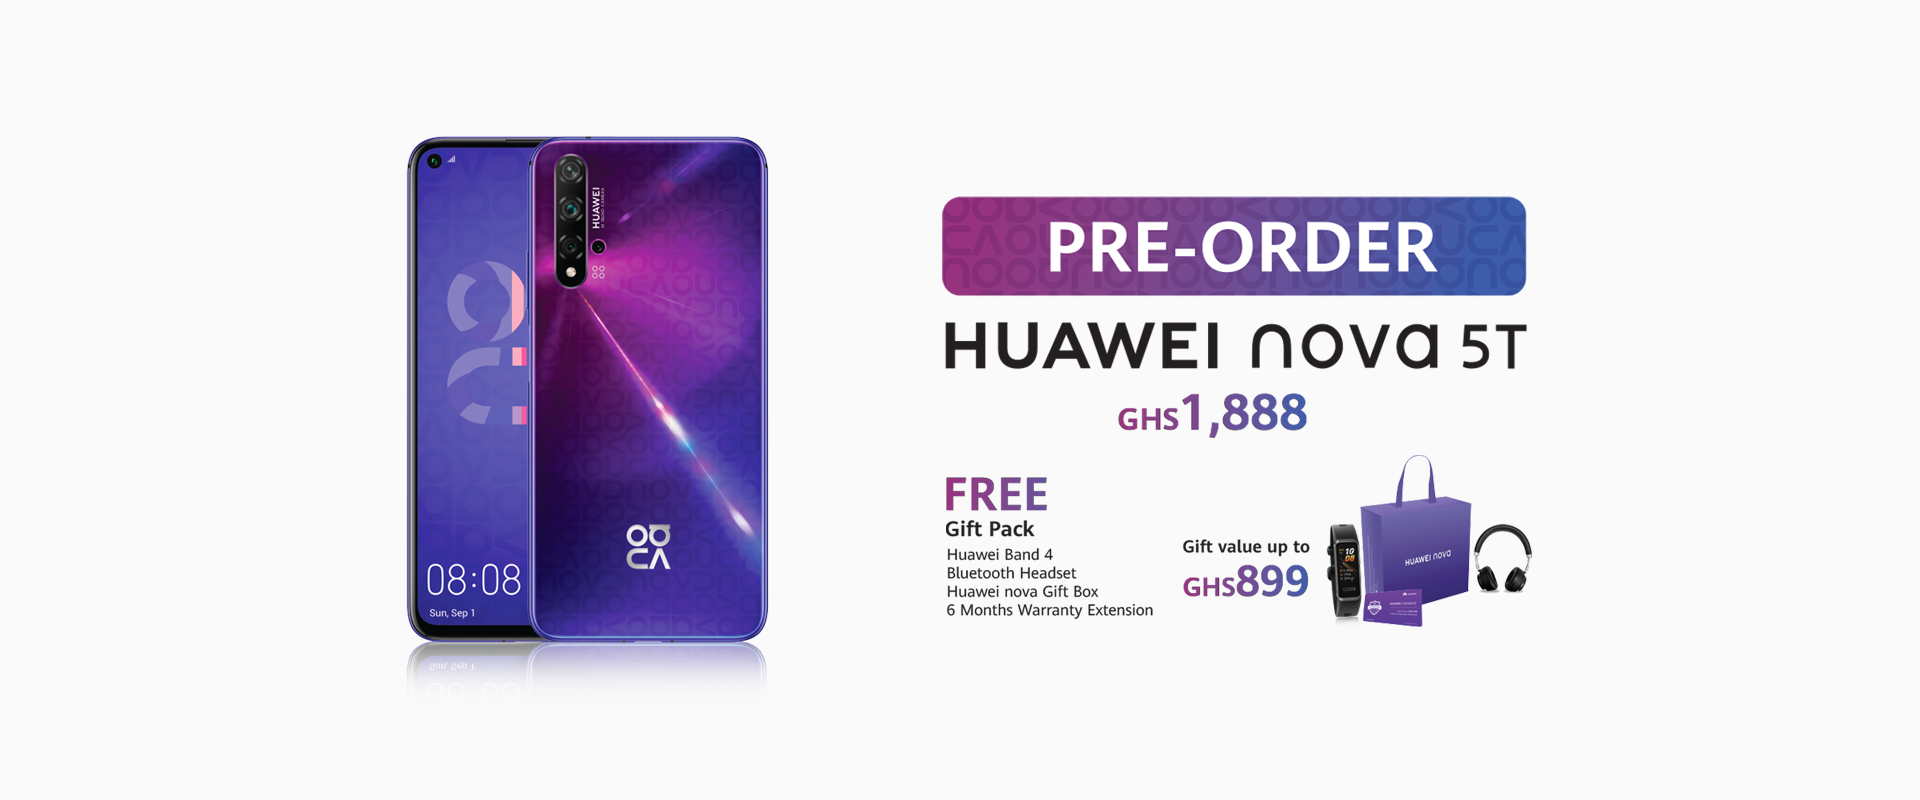 Price Of The Huawei Nova 5T In Ghana